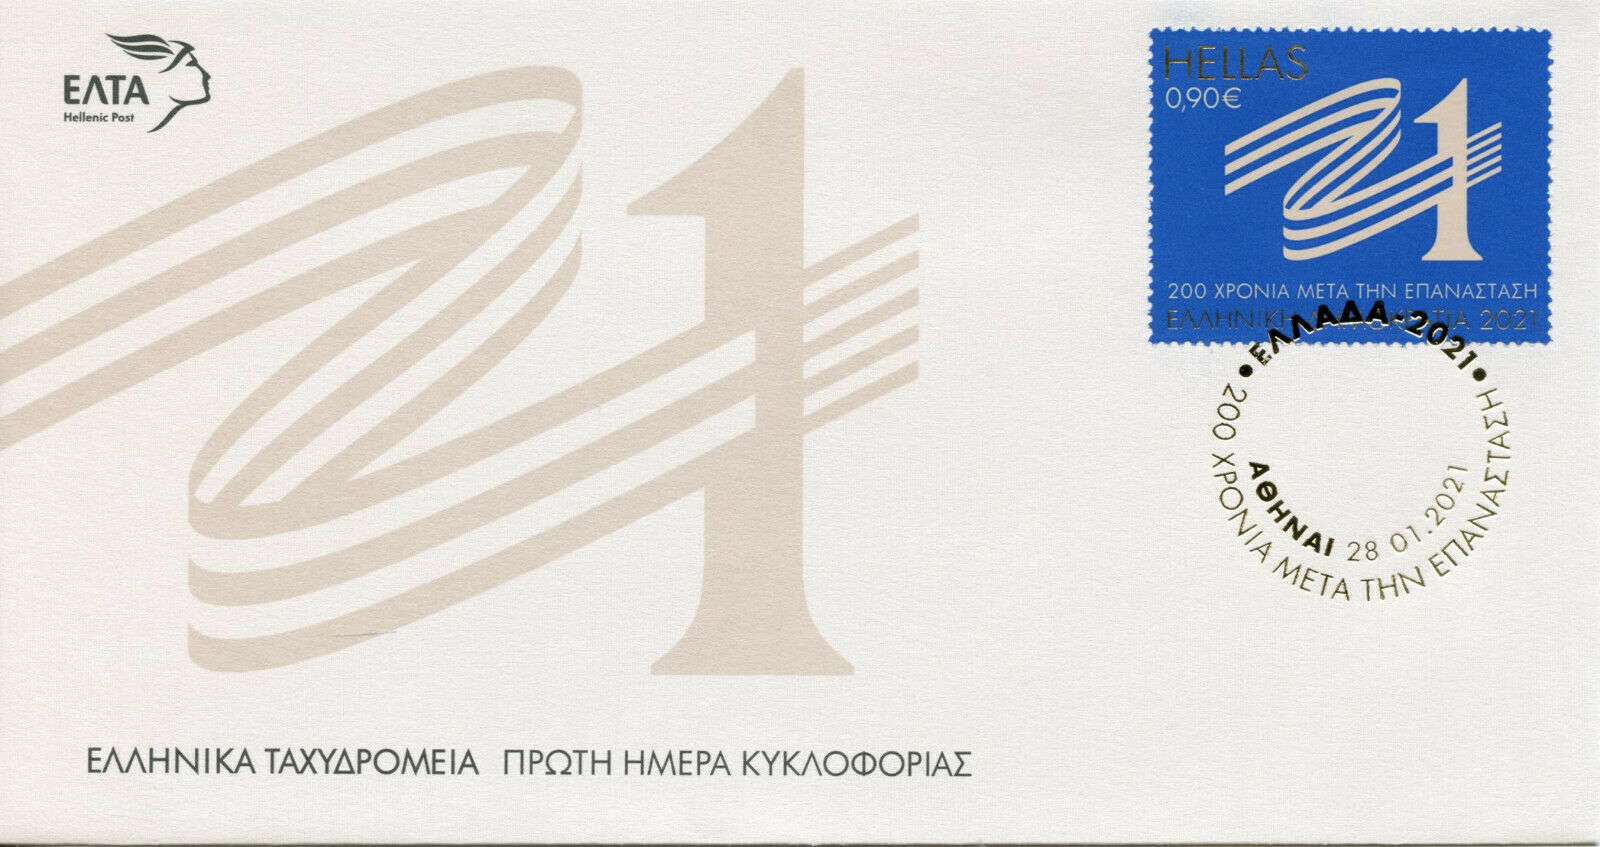 Greece Military Stamps 2021 FDC Greek War of Independence 1821 Revolution 2v Set